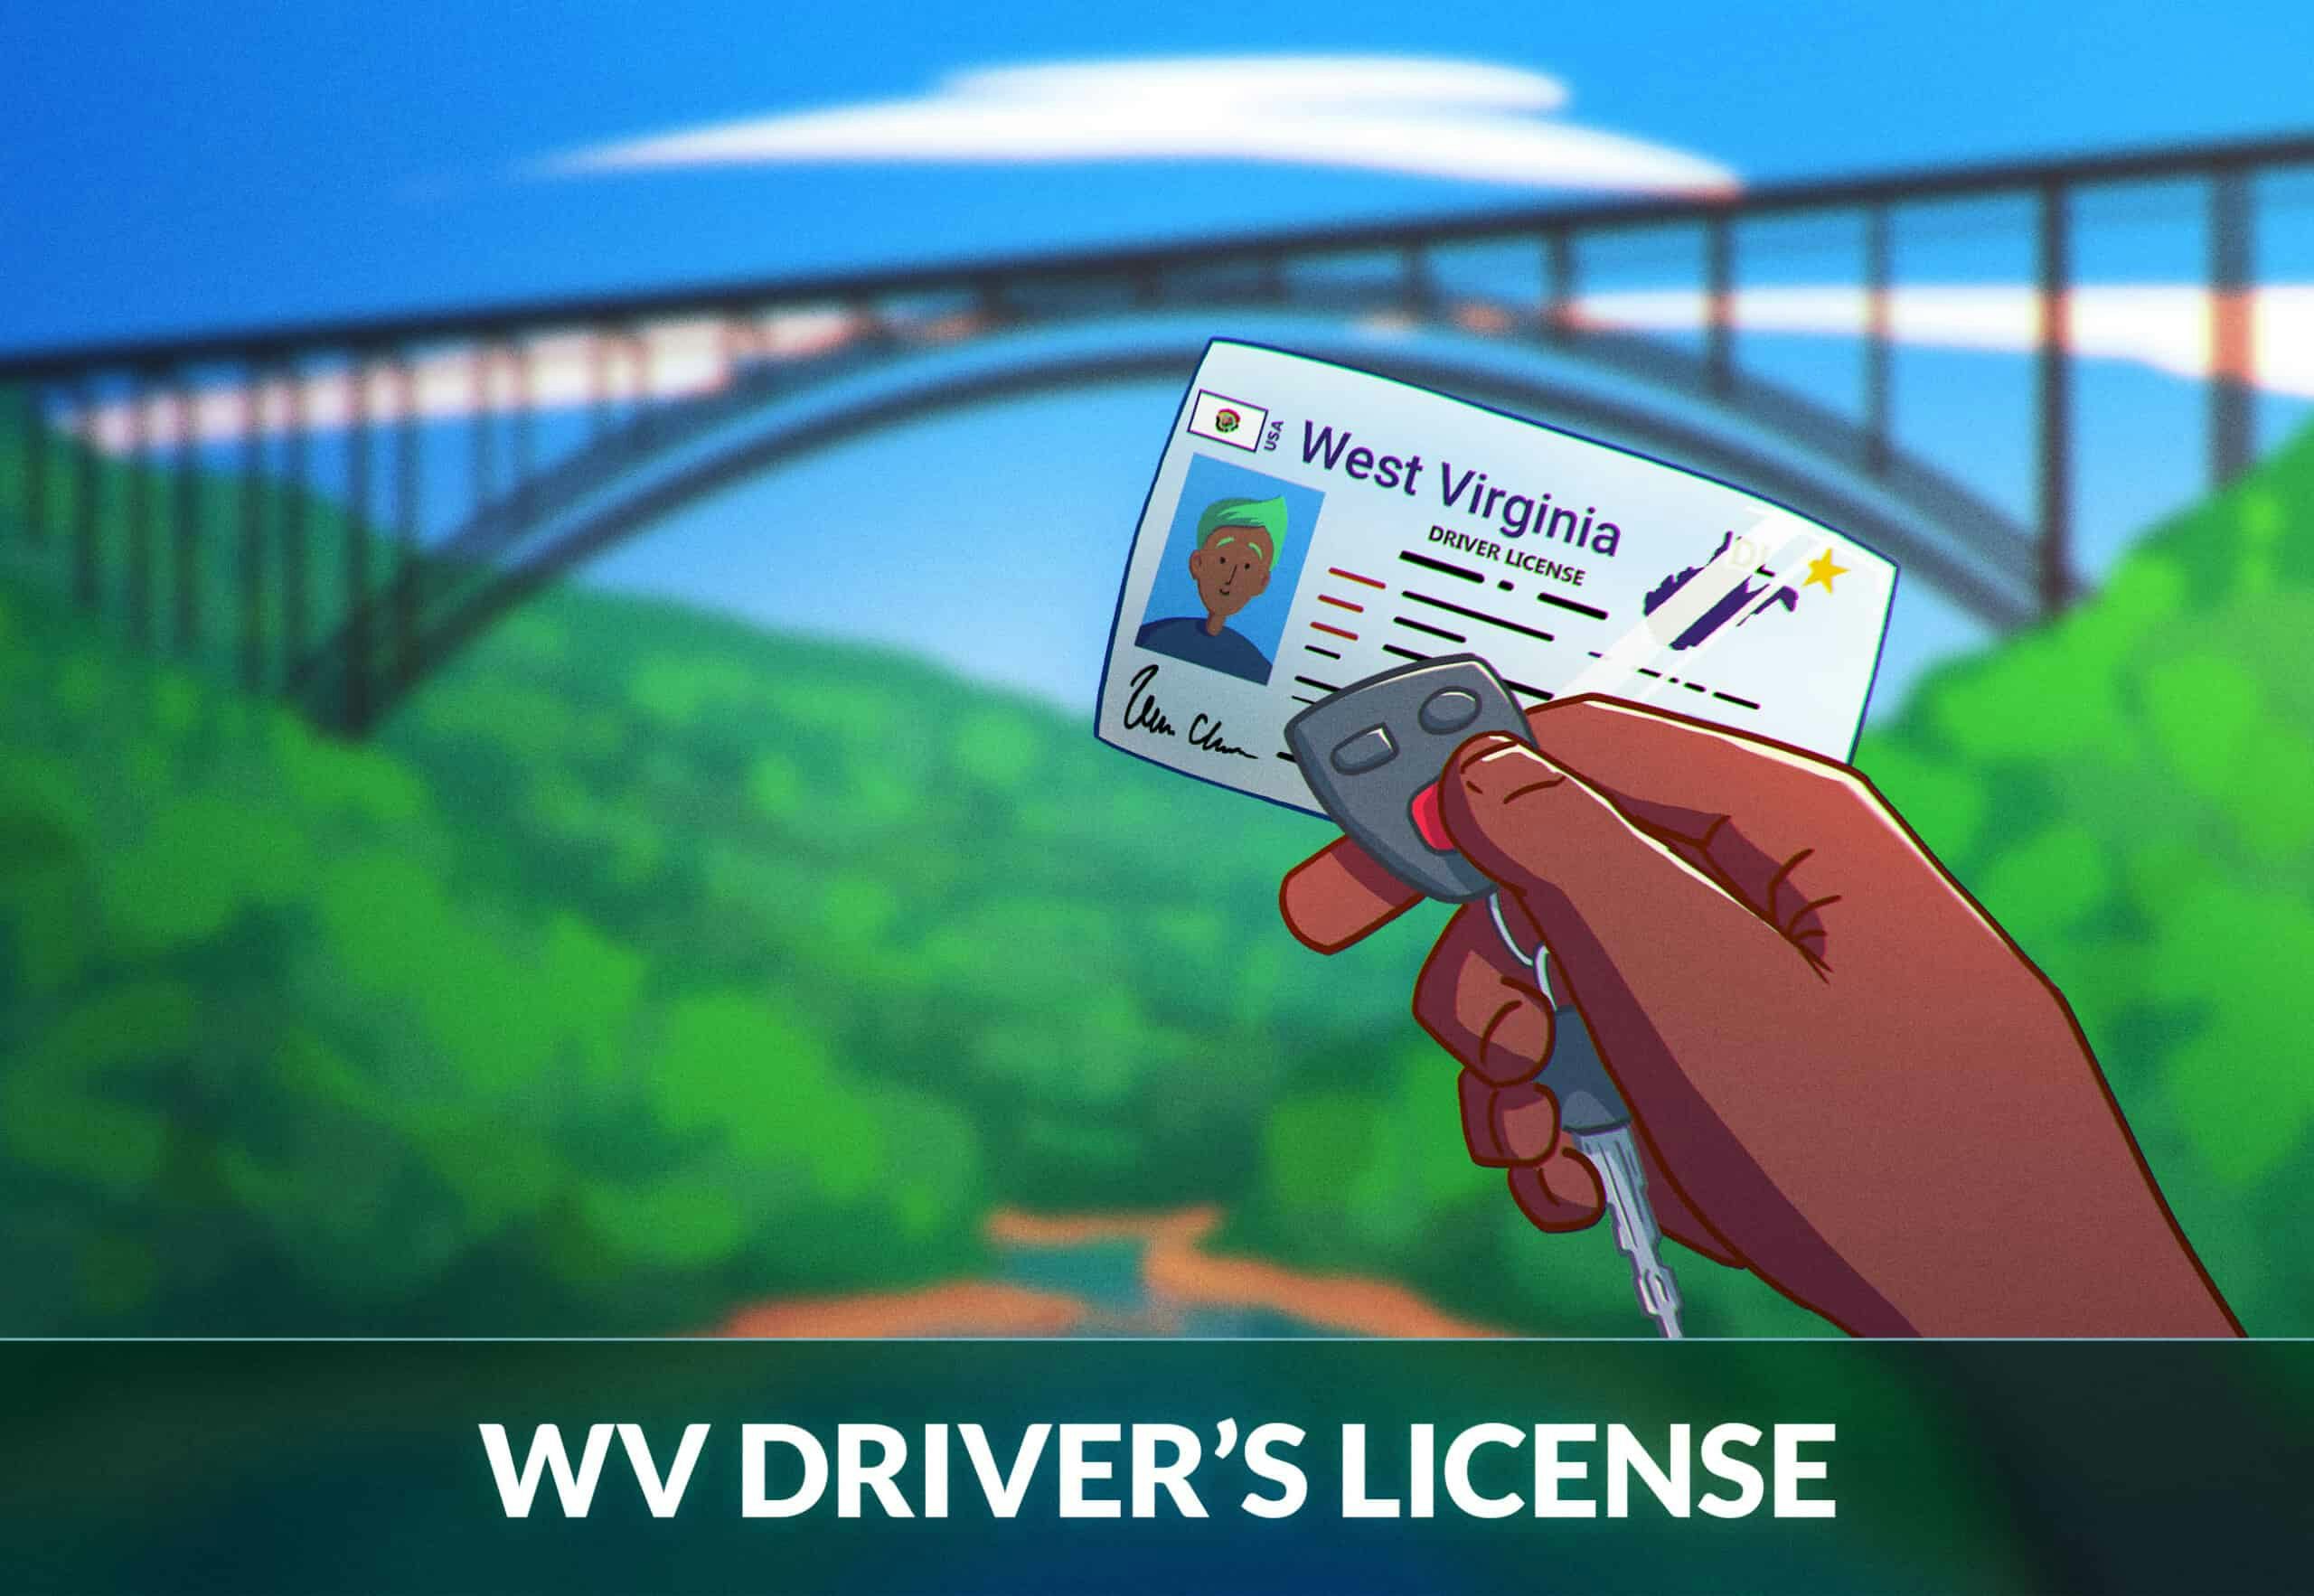 wv dmv form to renew license